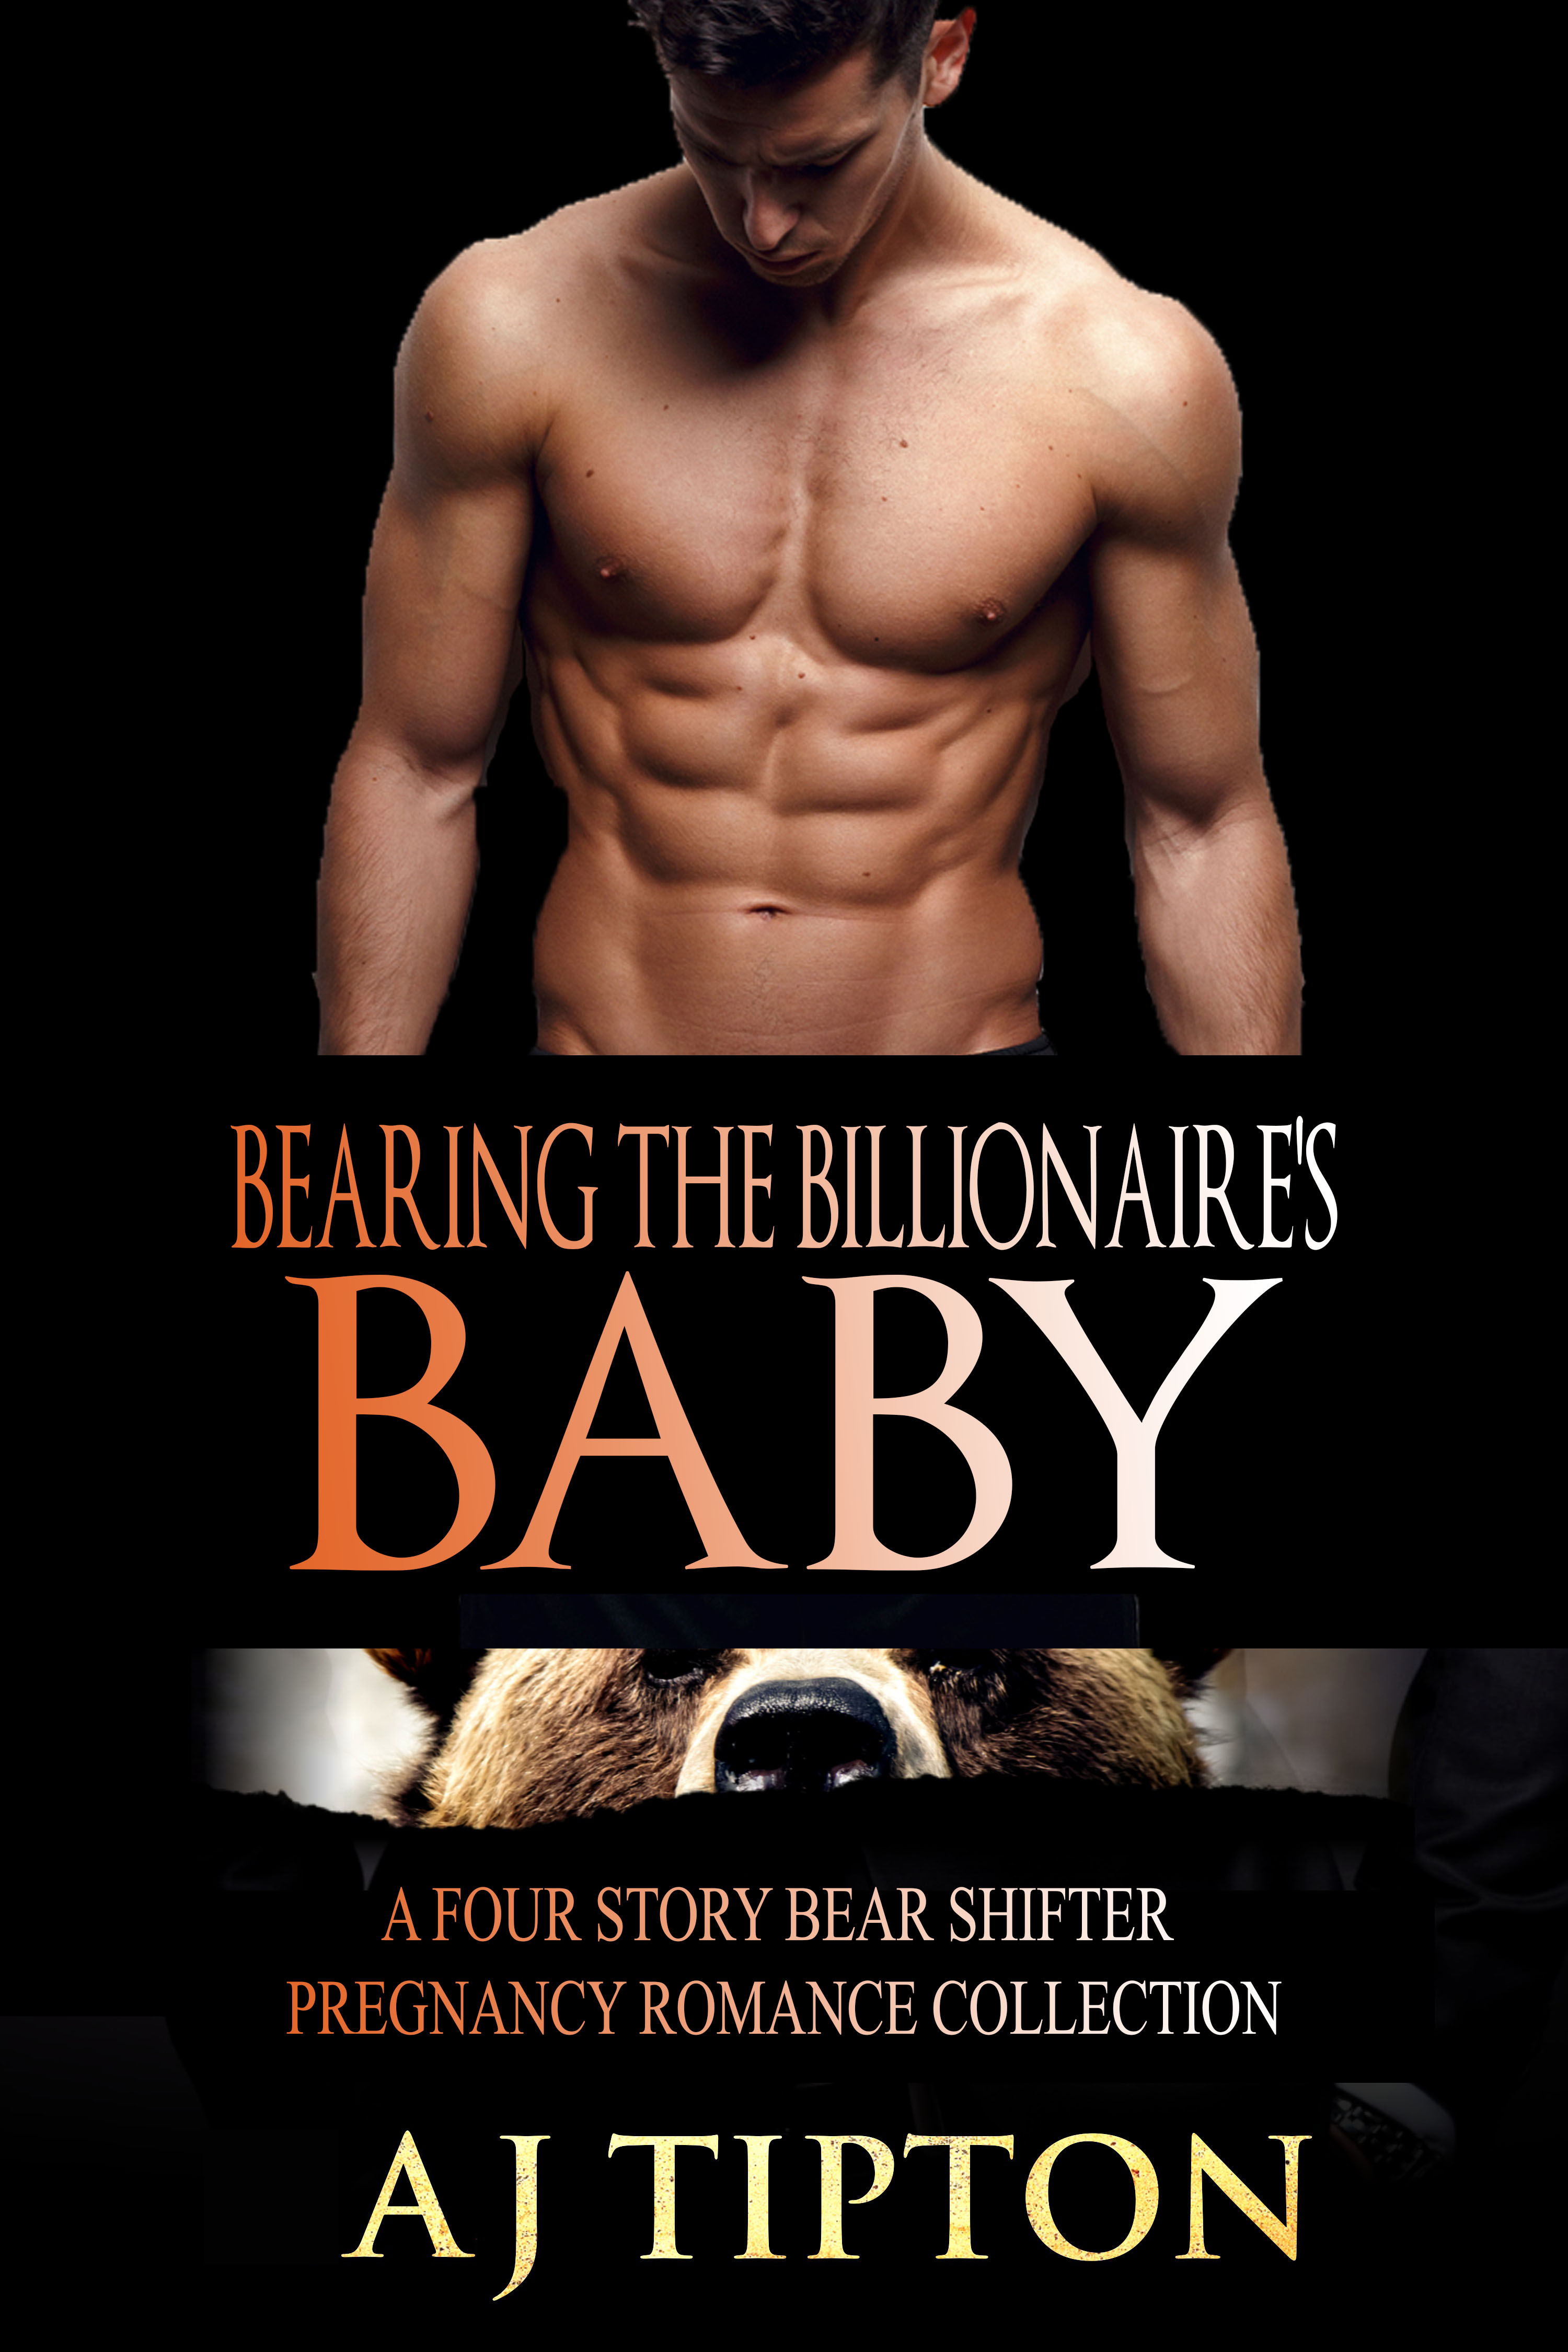 Bearing the Billionaire's Baby